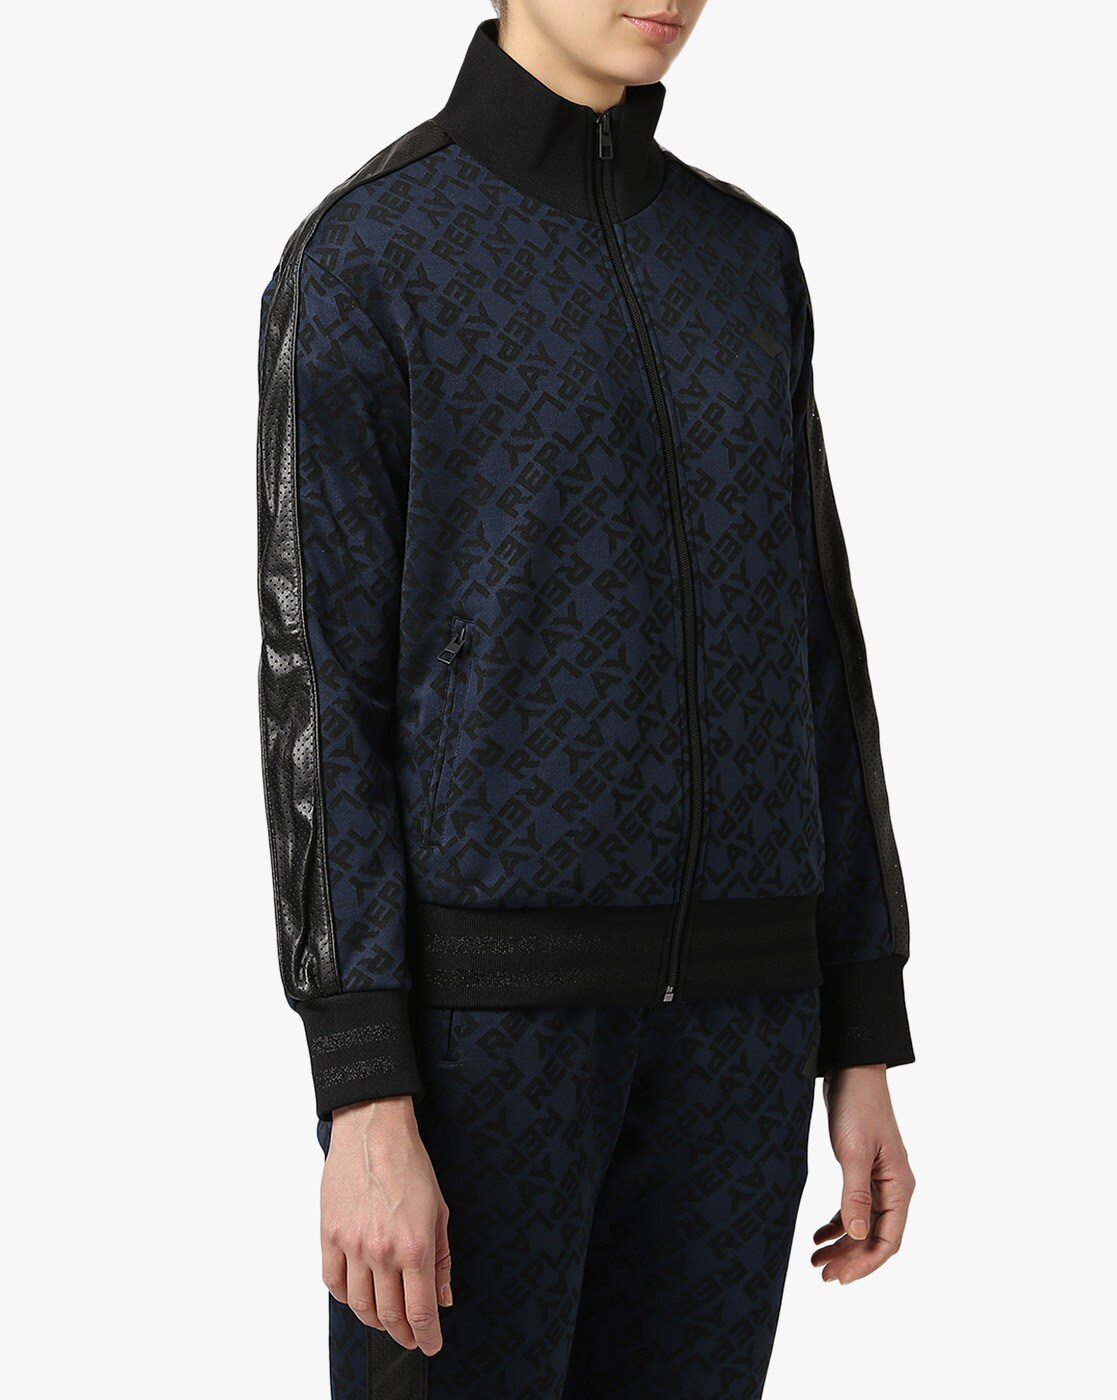 Shop Louis Vuitton Women's Hoodies & Sweatshirts